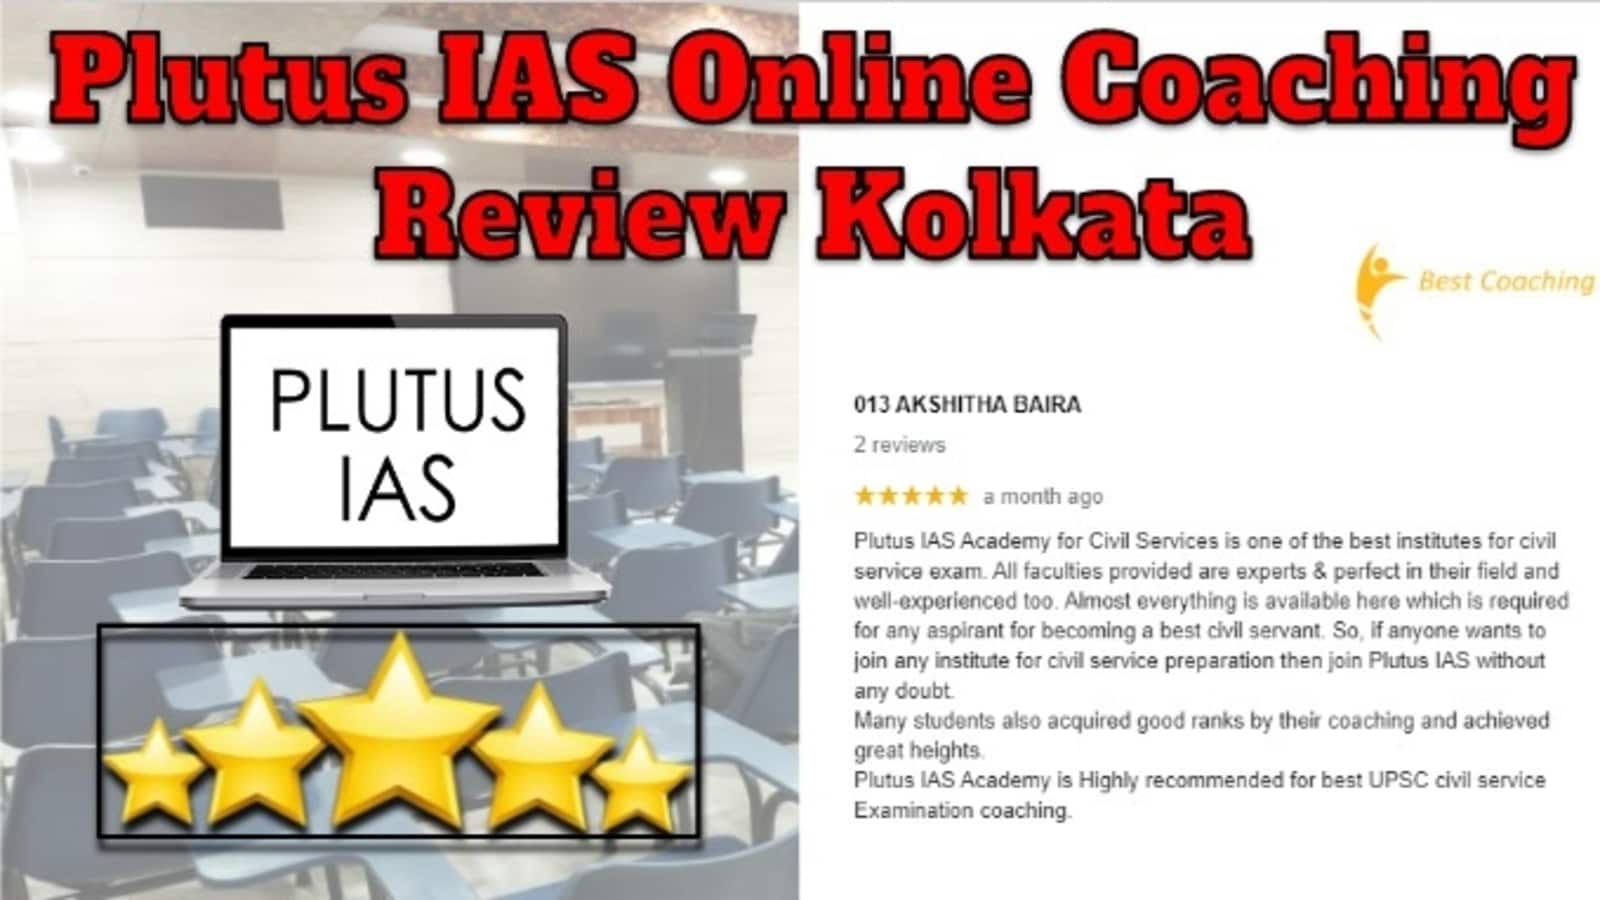 Plutus IAS Online Coaching Review Kolkata